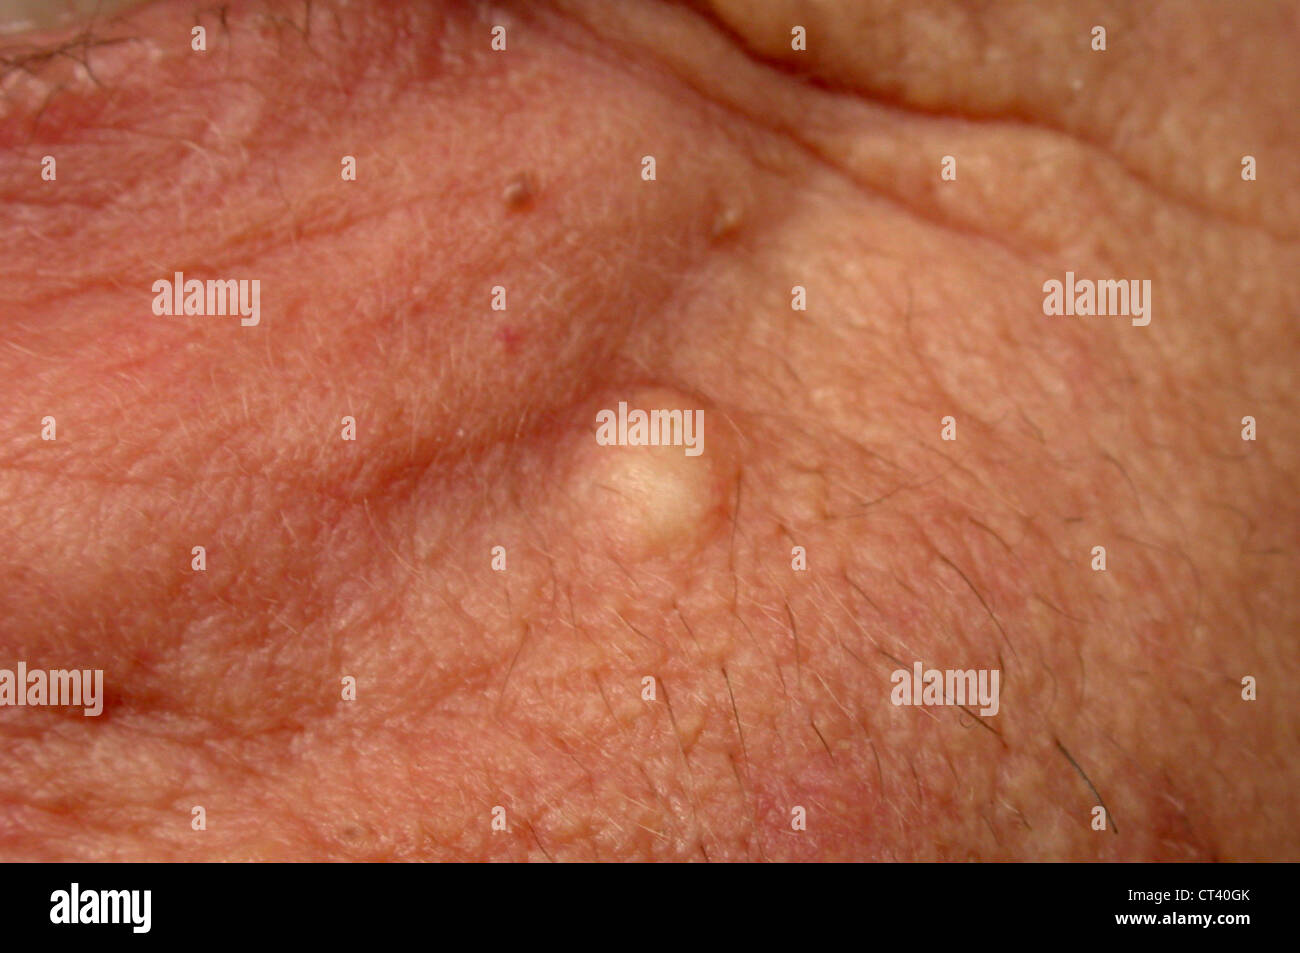 Sebaceous cysts immagini e fotografie stock ad alta risoluzione - Alamy